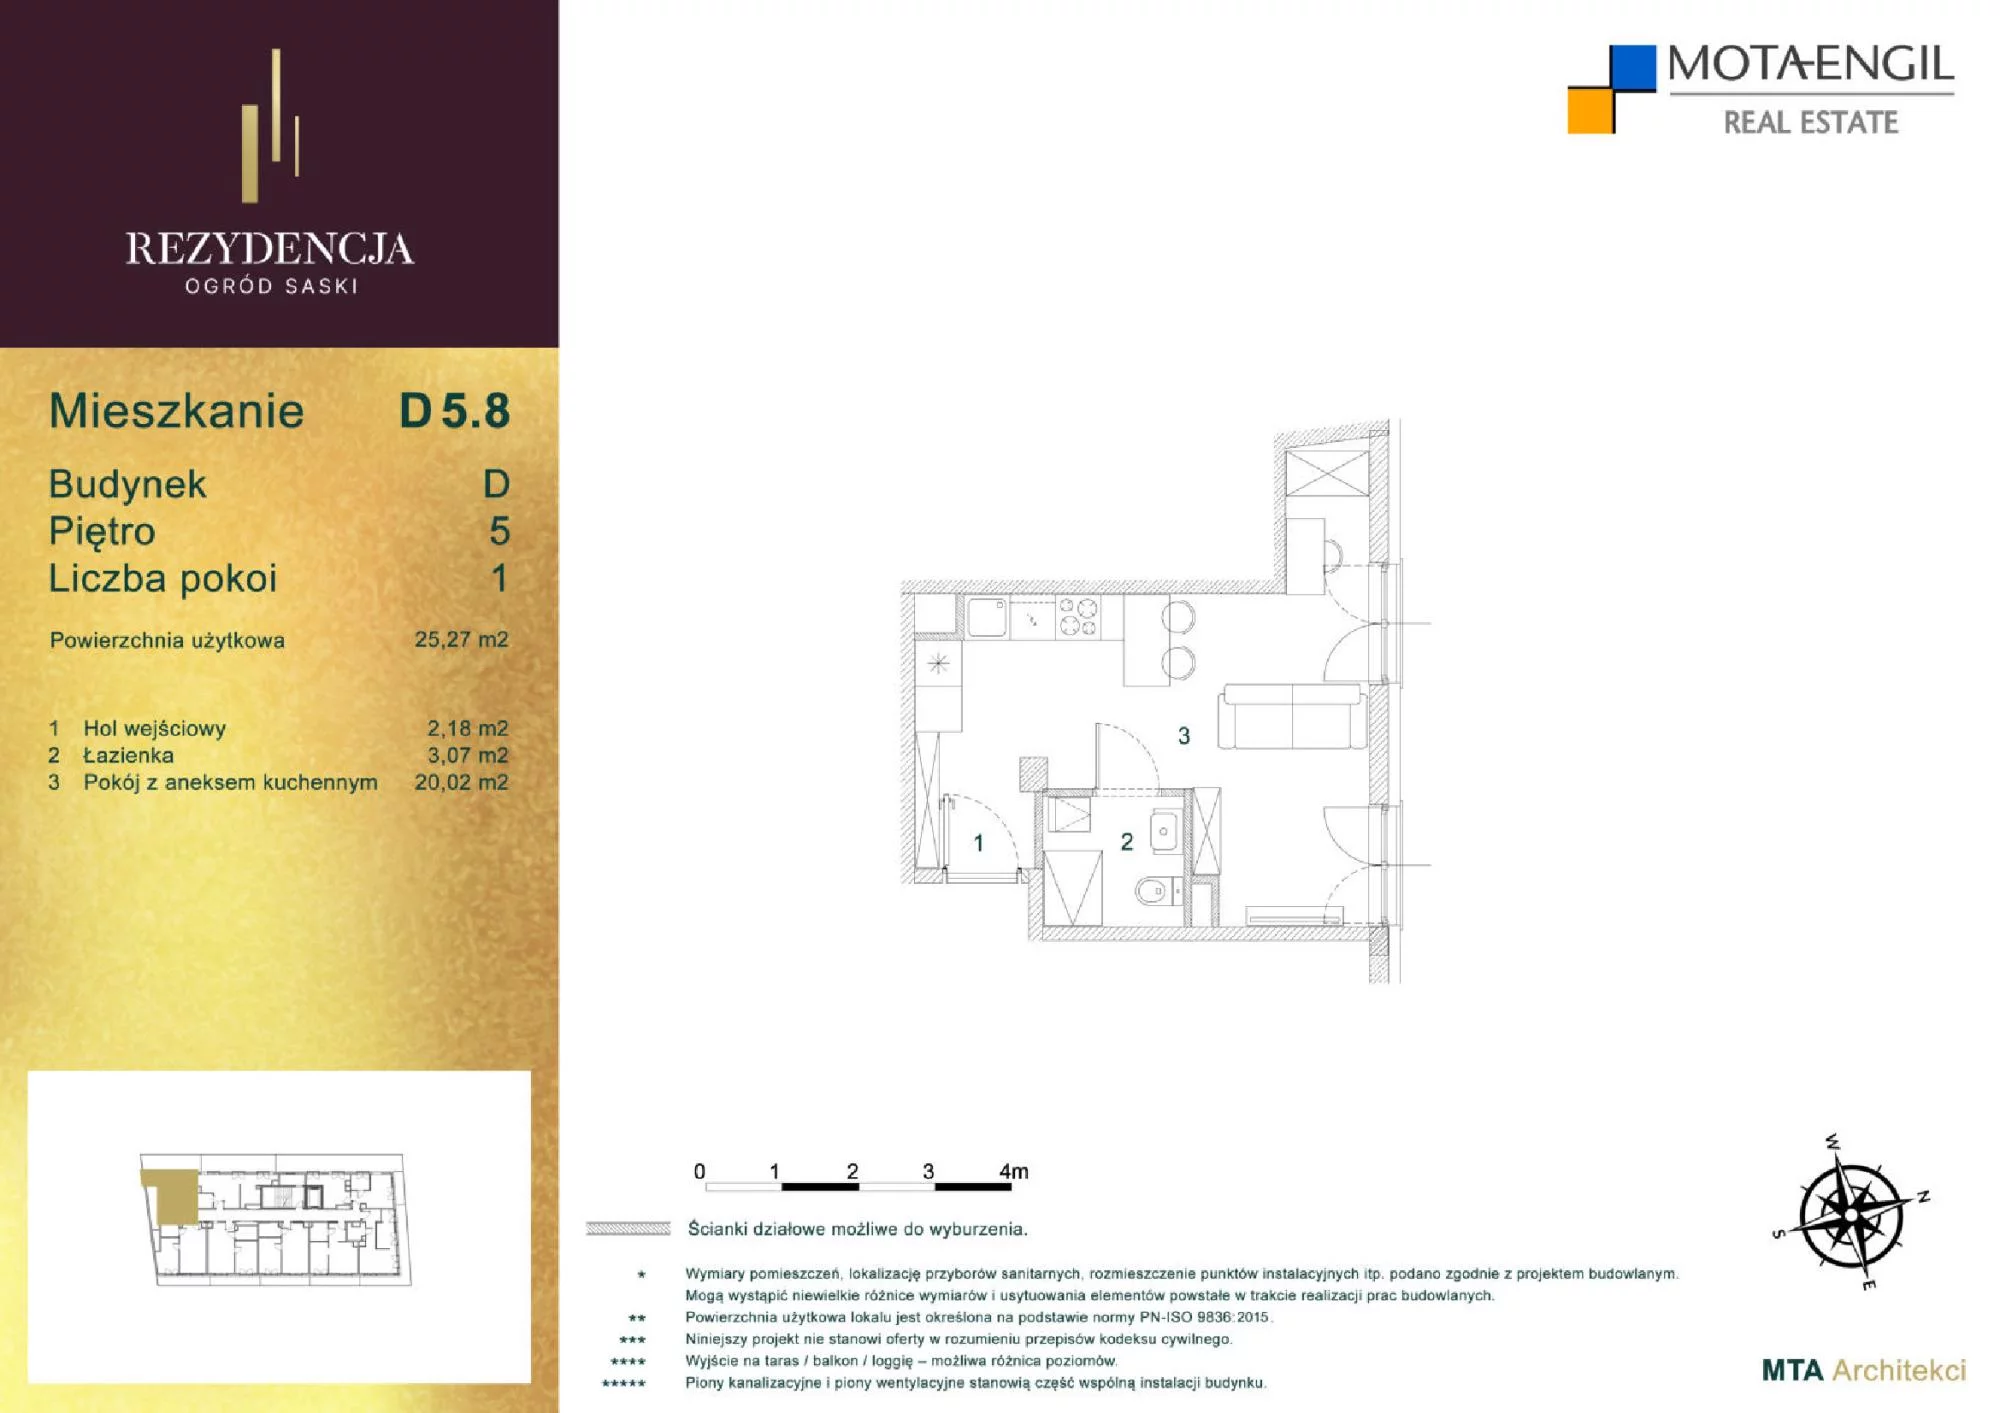 Mieszkanie 25,27 m², piętro 5, oferta nr D5.8, Rezydencja Ogród Saski, Lublin, Wieniawa, ul. Jasna 7, 7A